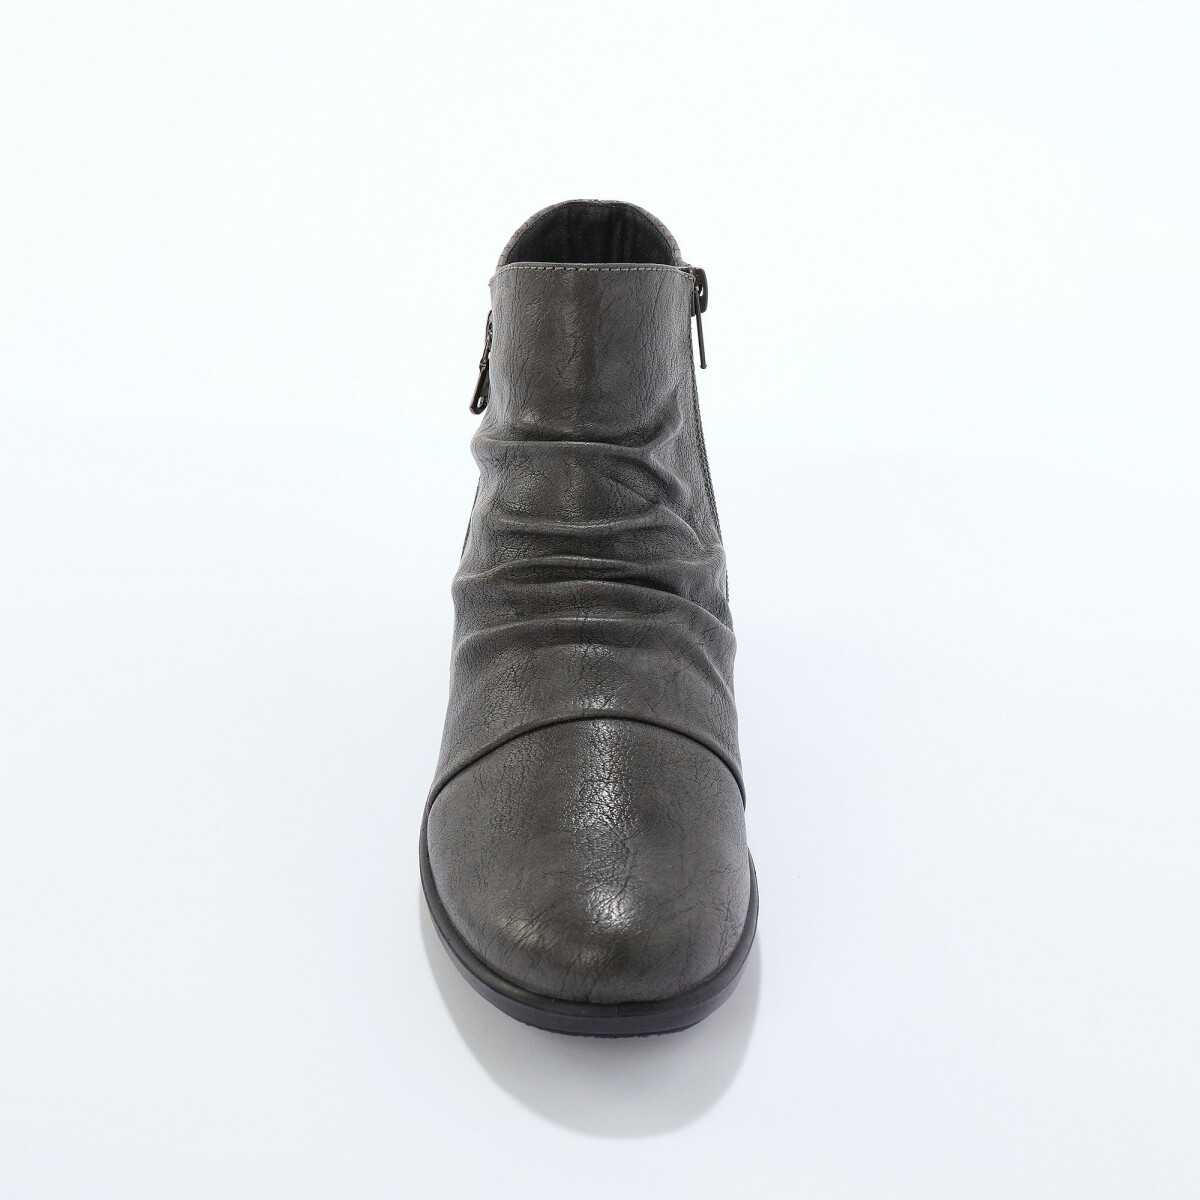 Vysoké topánky so skladmi, vložený vzor krokodílej kože